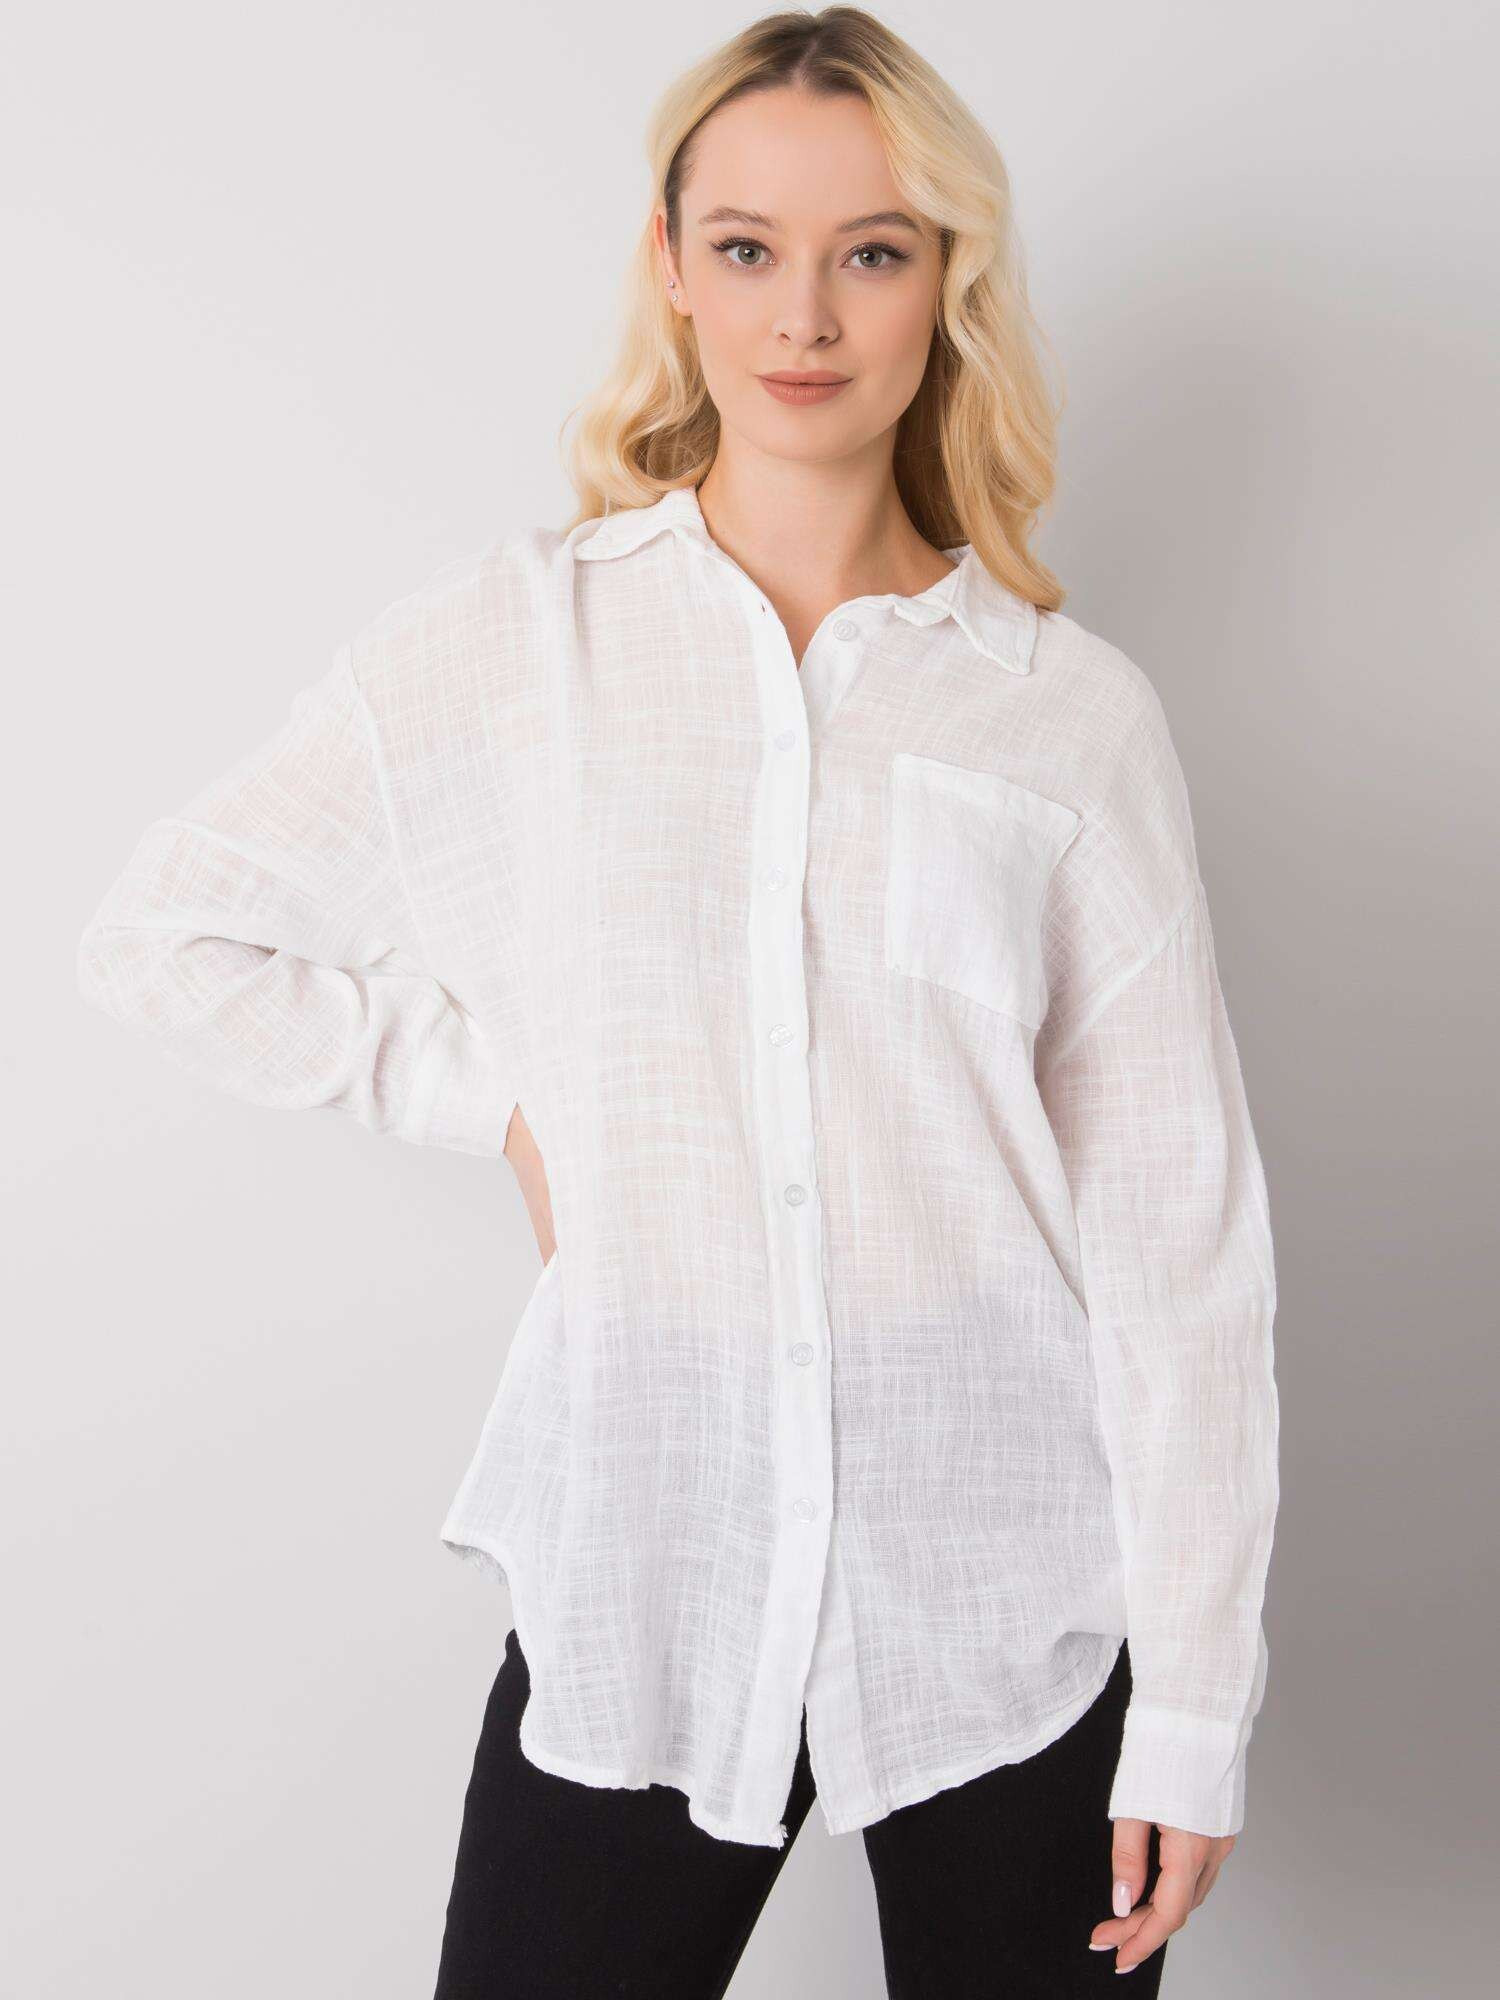 Женская рубашка свободного кроя с длинным объемным рукавом Factory Price